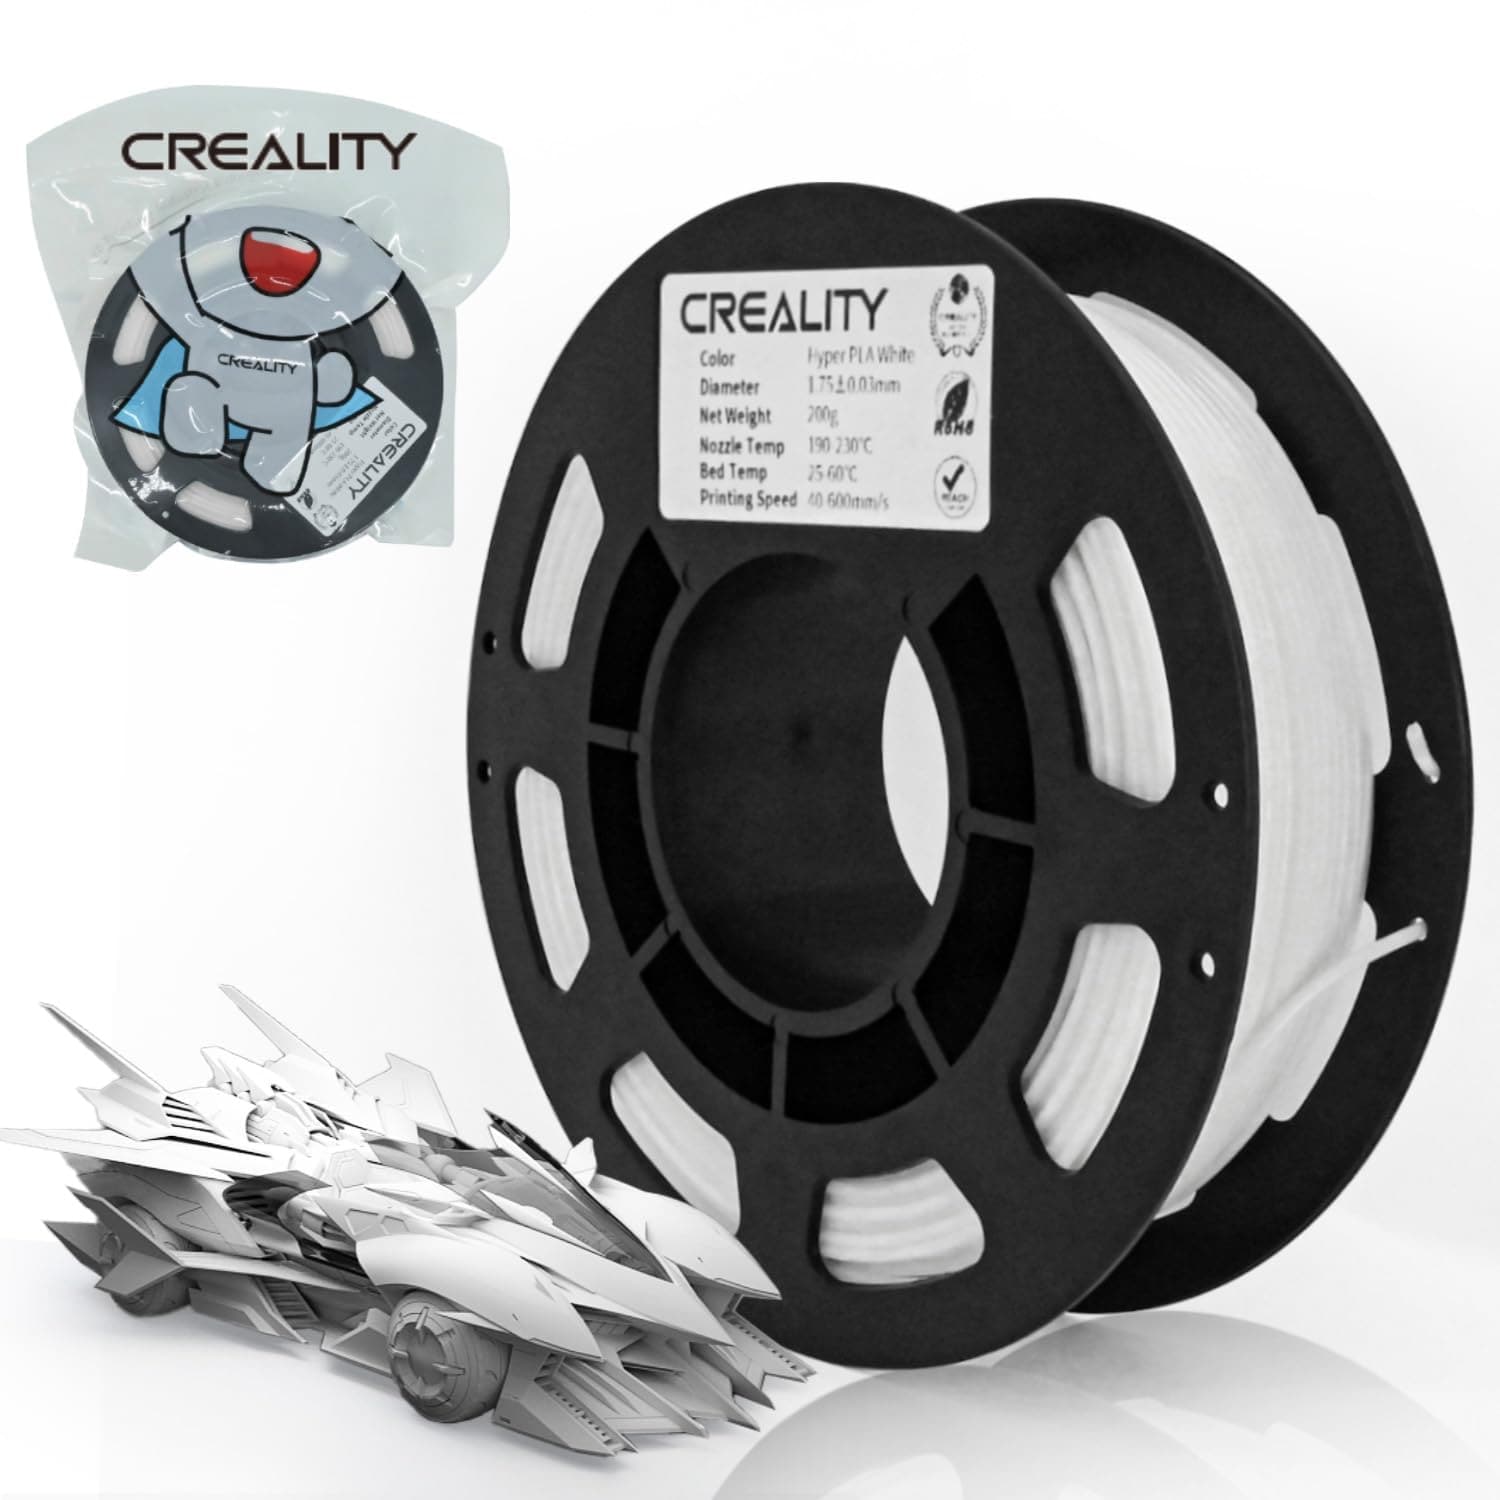 Creality 3D Printer PLA Filament 1.75mm Bundle 3 Packs (White,Black,Gray)